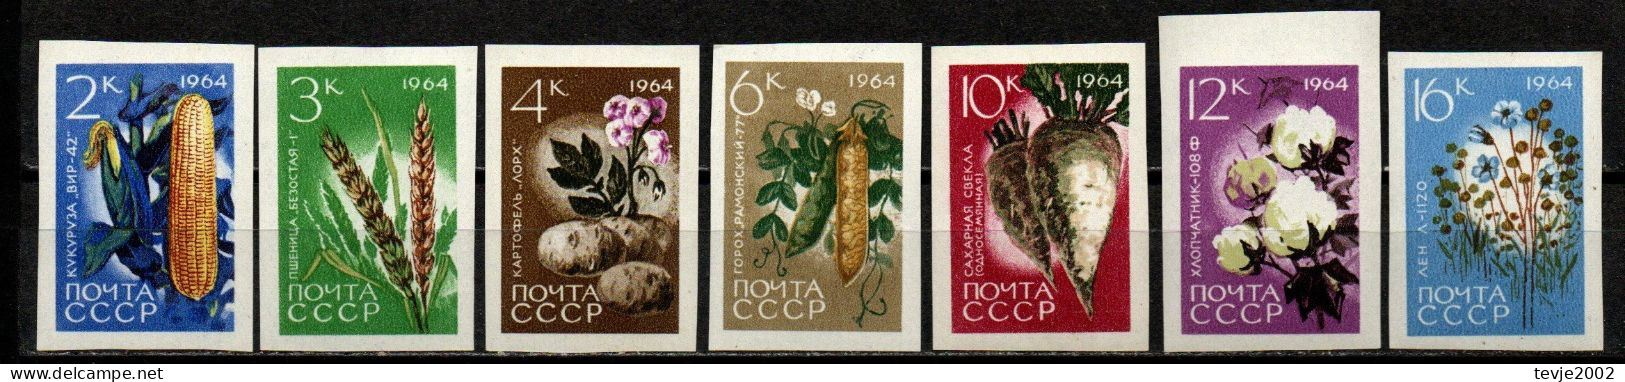 Sowjetunion UdSSR CCCP 1964 - Mi.Nr. 2922 - 2928 B - Postfrisch MNH - Gemüse Vegetables - Gemüse